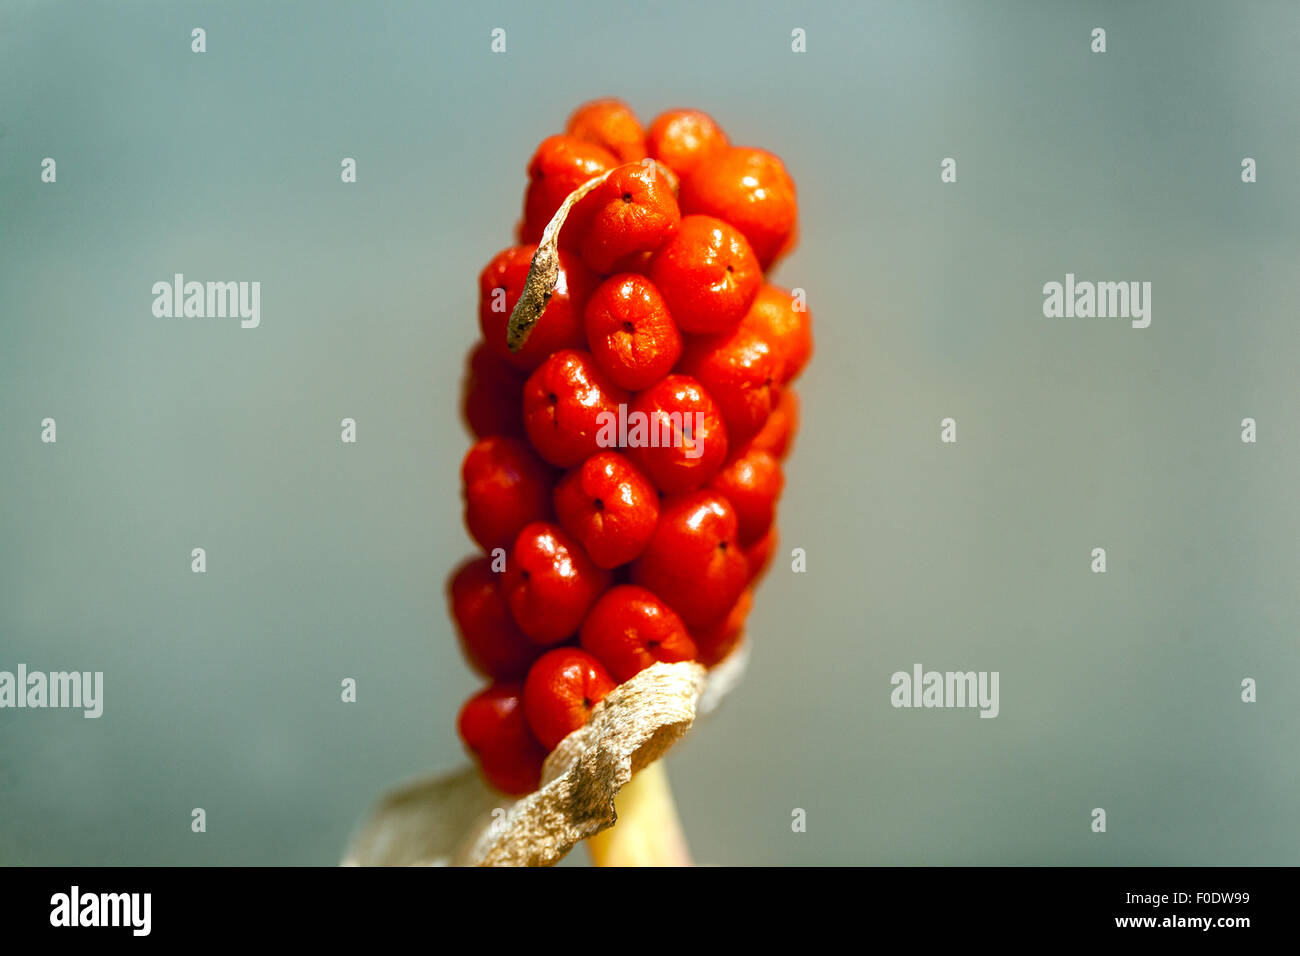 Kuckuck Pint oder Lords und Ladies - Arum maculatum - giftige Beeren Stockfoto